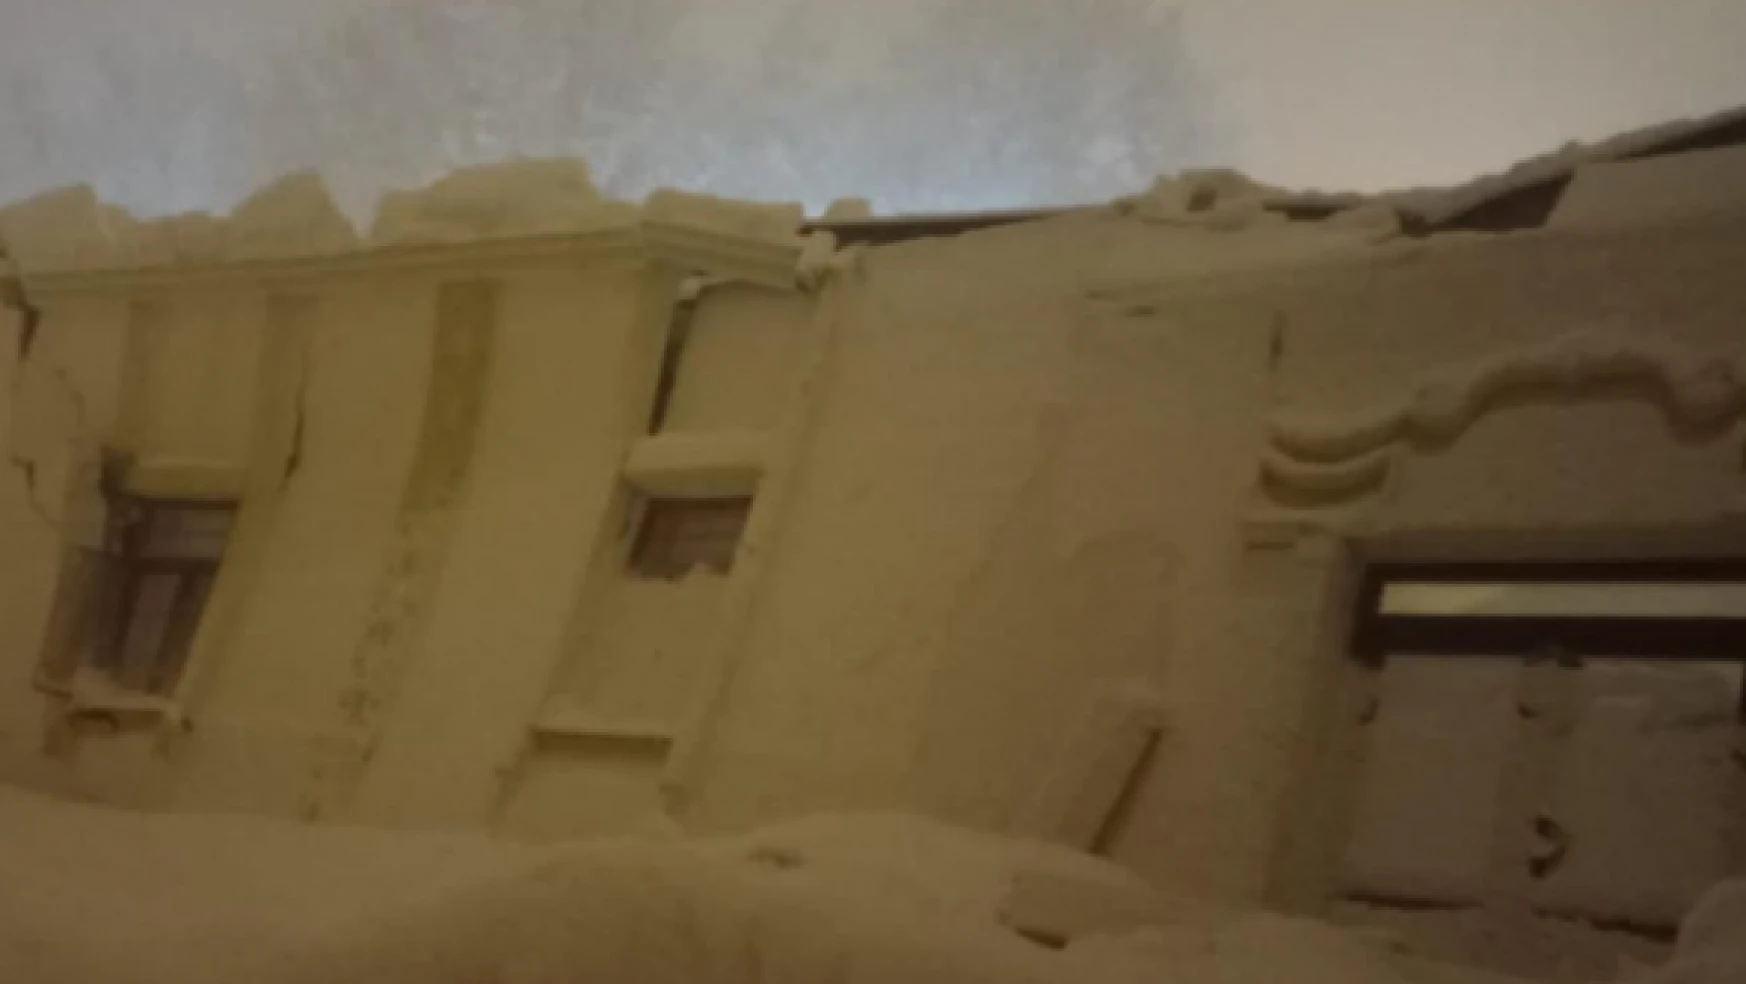 Elazığ'da çatısına kar biriken düğün salonu böyle çöktü!